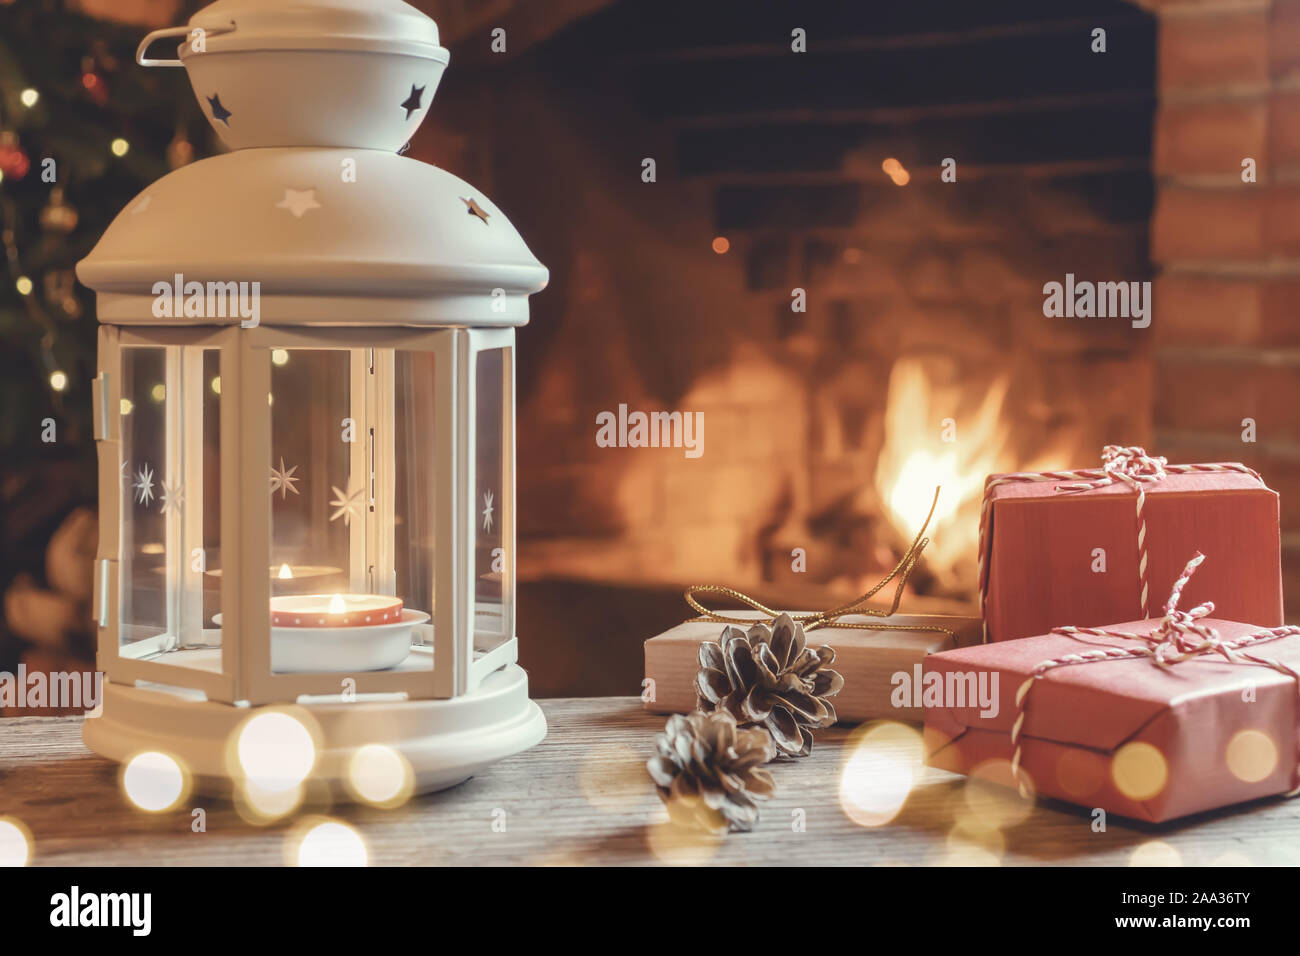 Lanterna con una candela che brucia, doni su una tavola di legno in una stanza con un albero di Natale e un caminetto per la Vigilia di Natale. Foto Stock